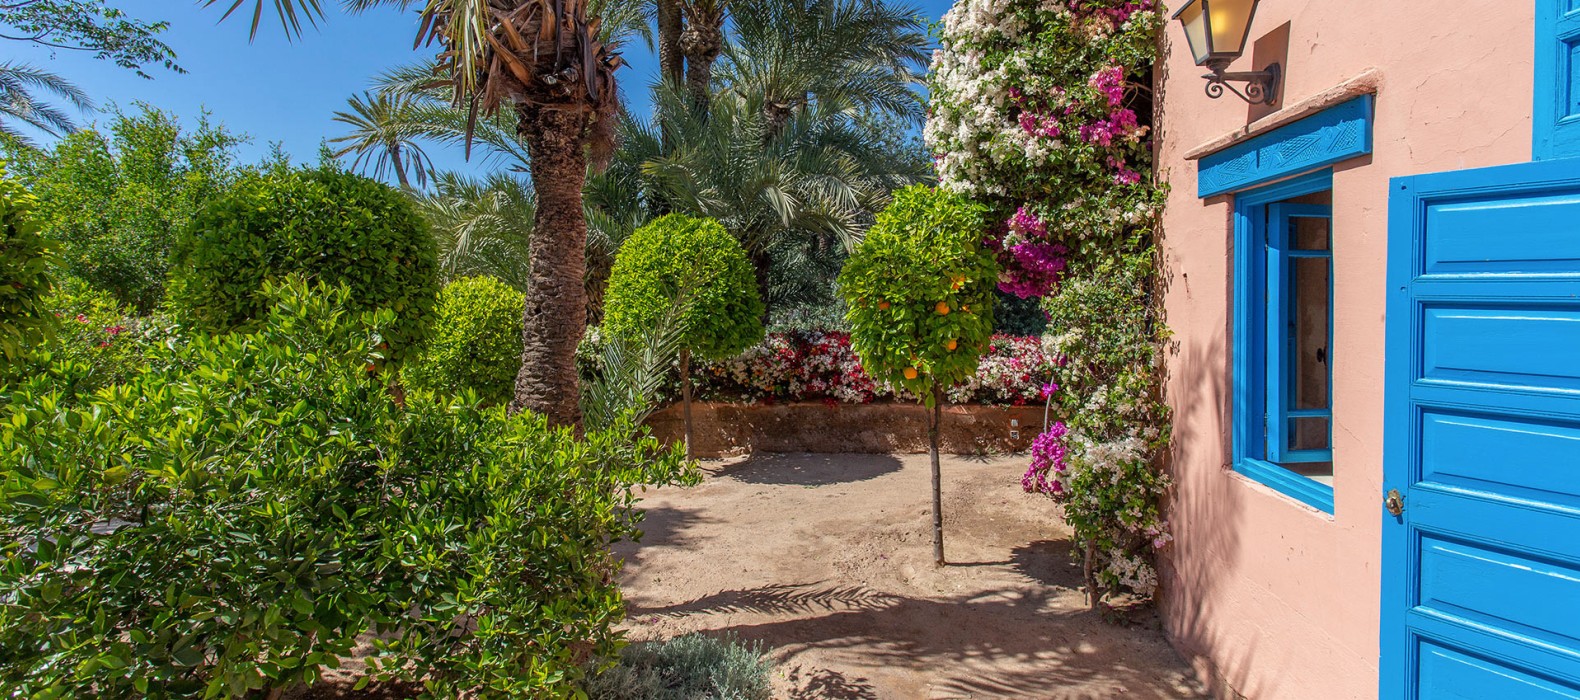 Exterior area view of Villa Les Almohades in Marrakech